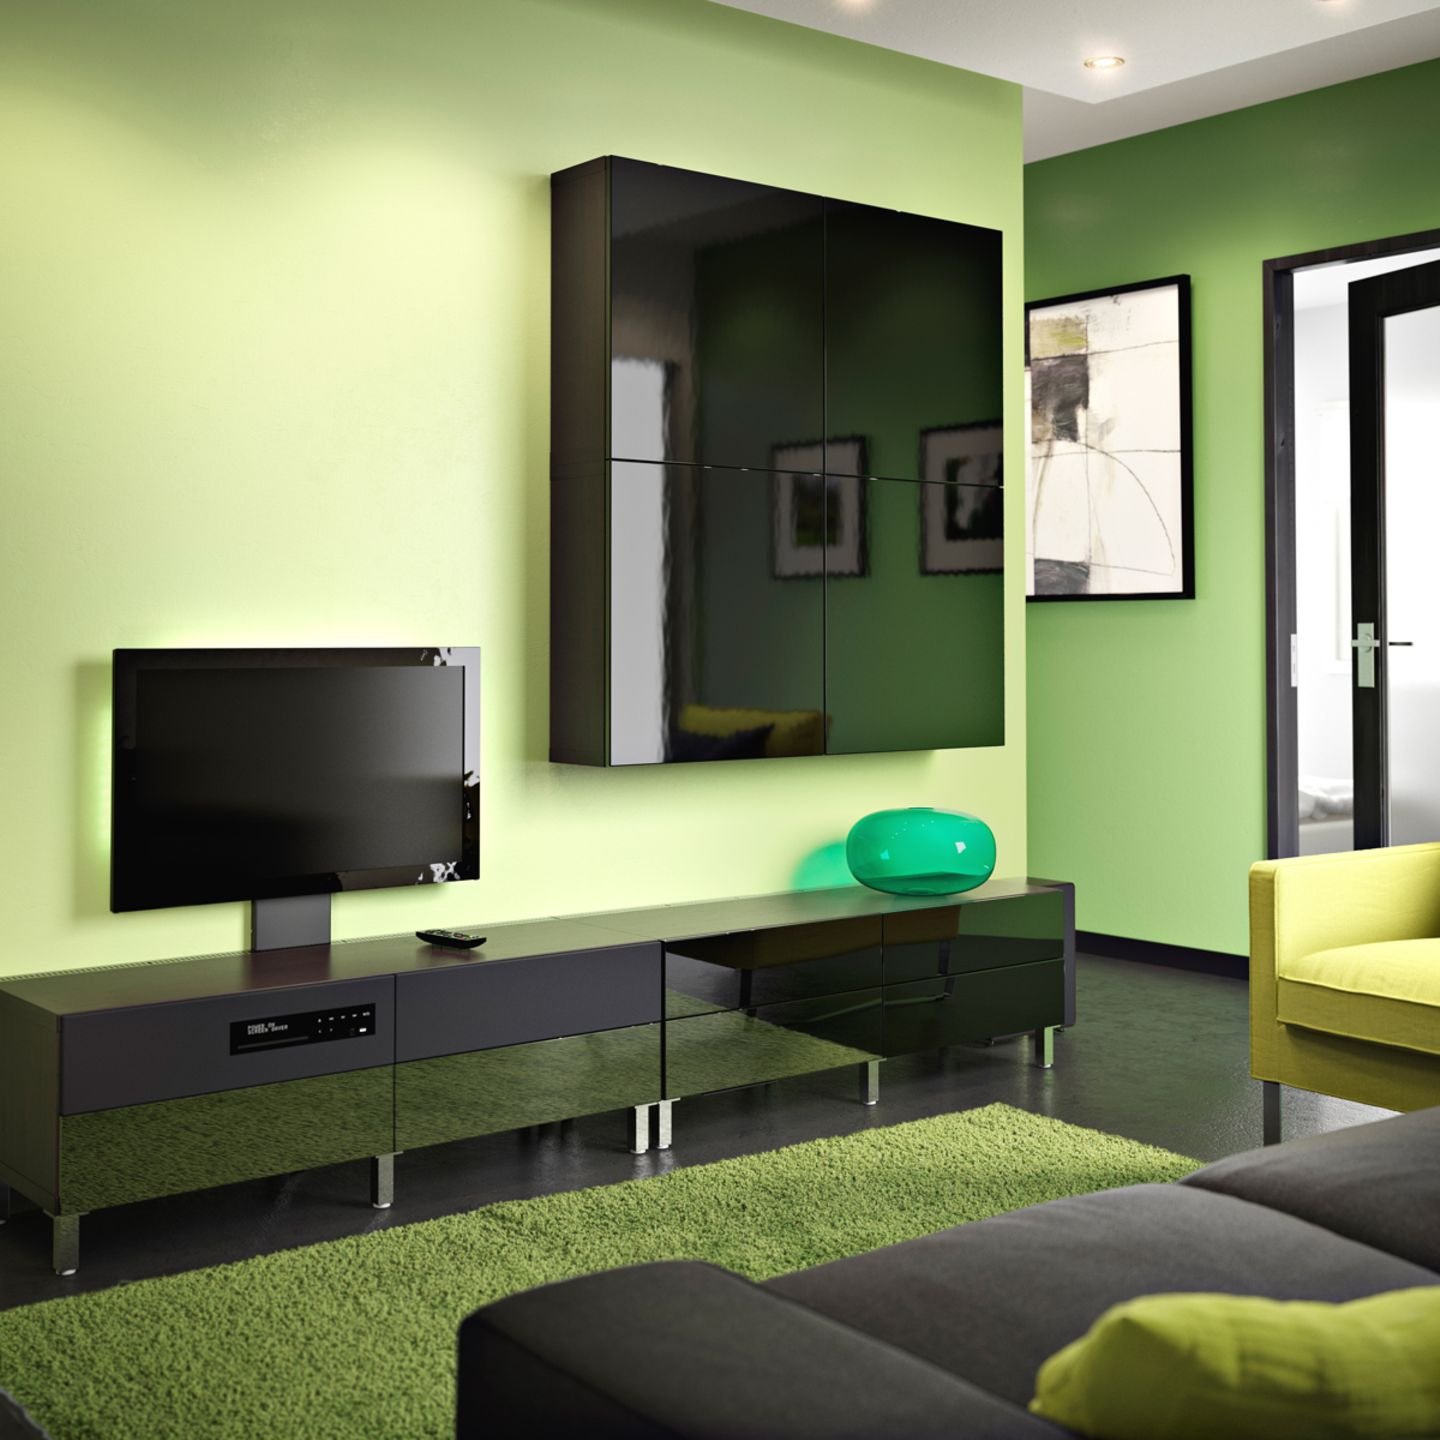 Стенка зеленого цвета. Гостиная в салатовых тонах. Зеленые стены в гостиной. Гостиная с зелеными стенами. Гостиная в зеленых тонах.